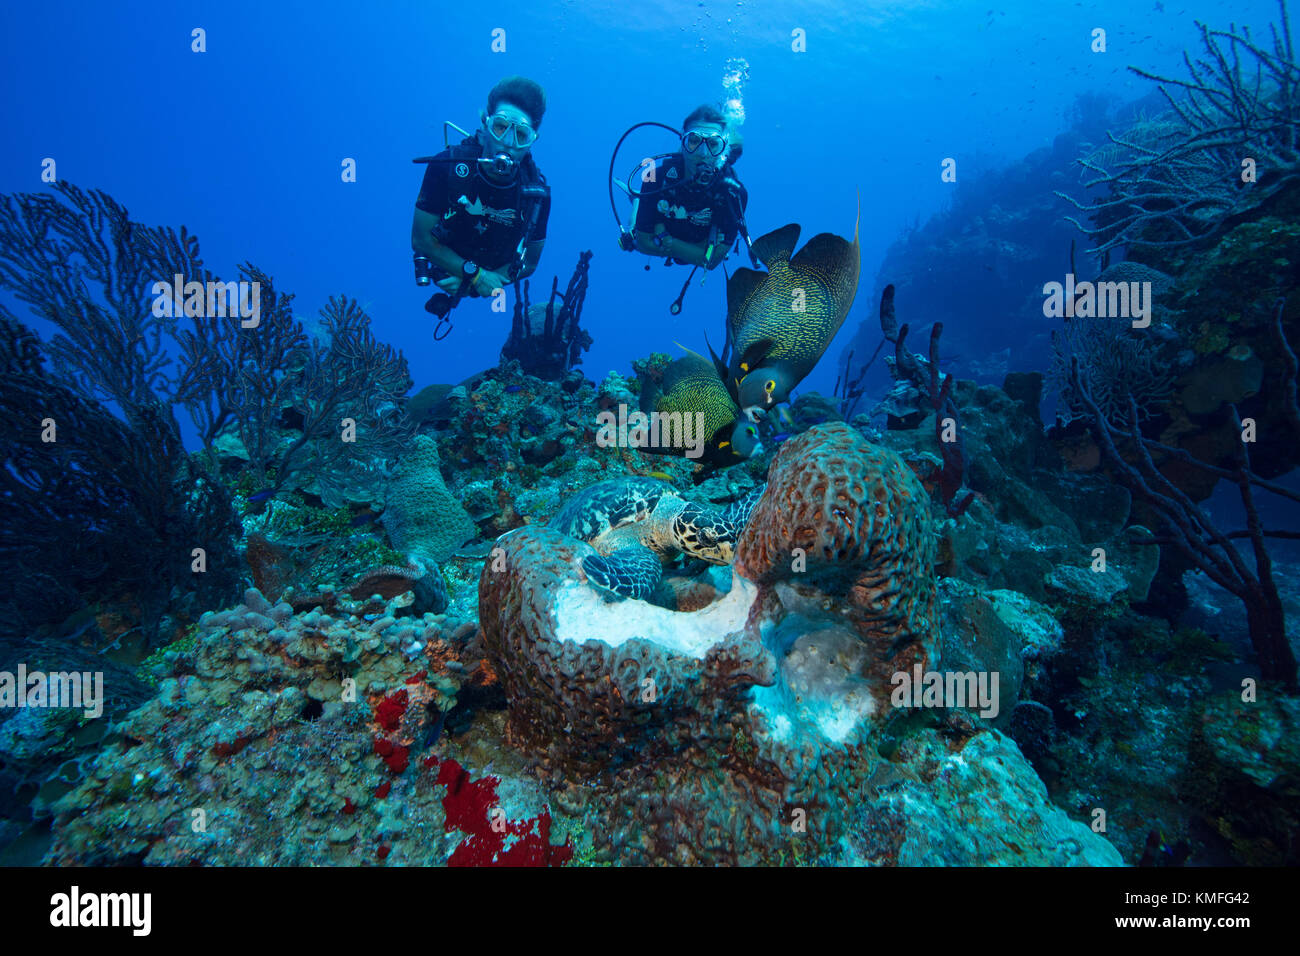 Regarder les plongeurs l'interaction de différentes espèces de la vie marine qu'ils ont accès à la même source de nourriture. Banque D'Images